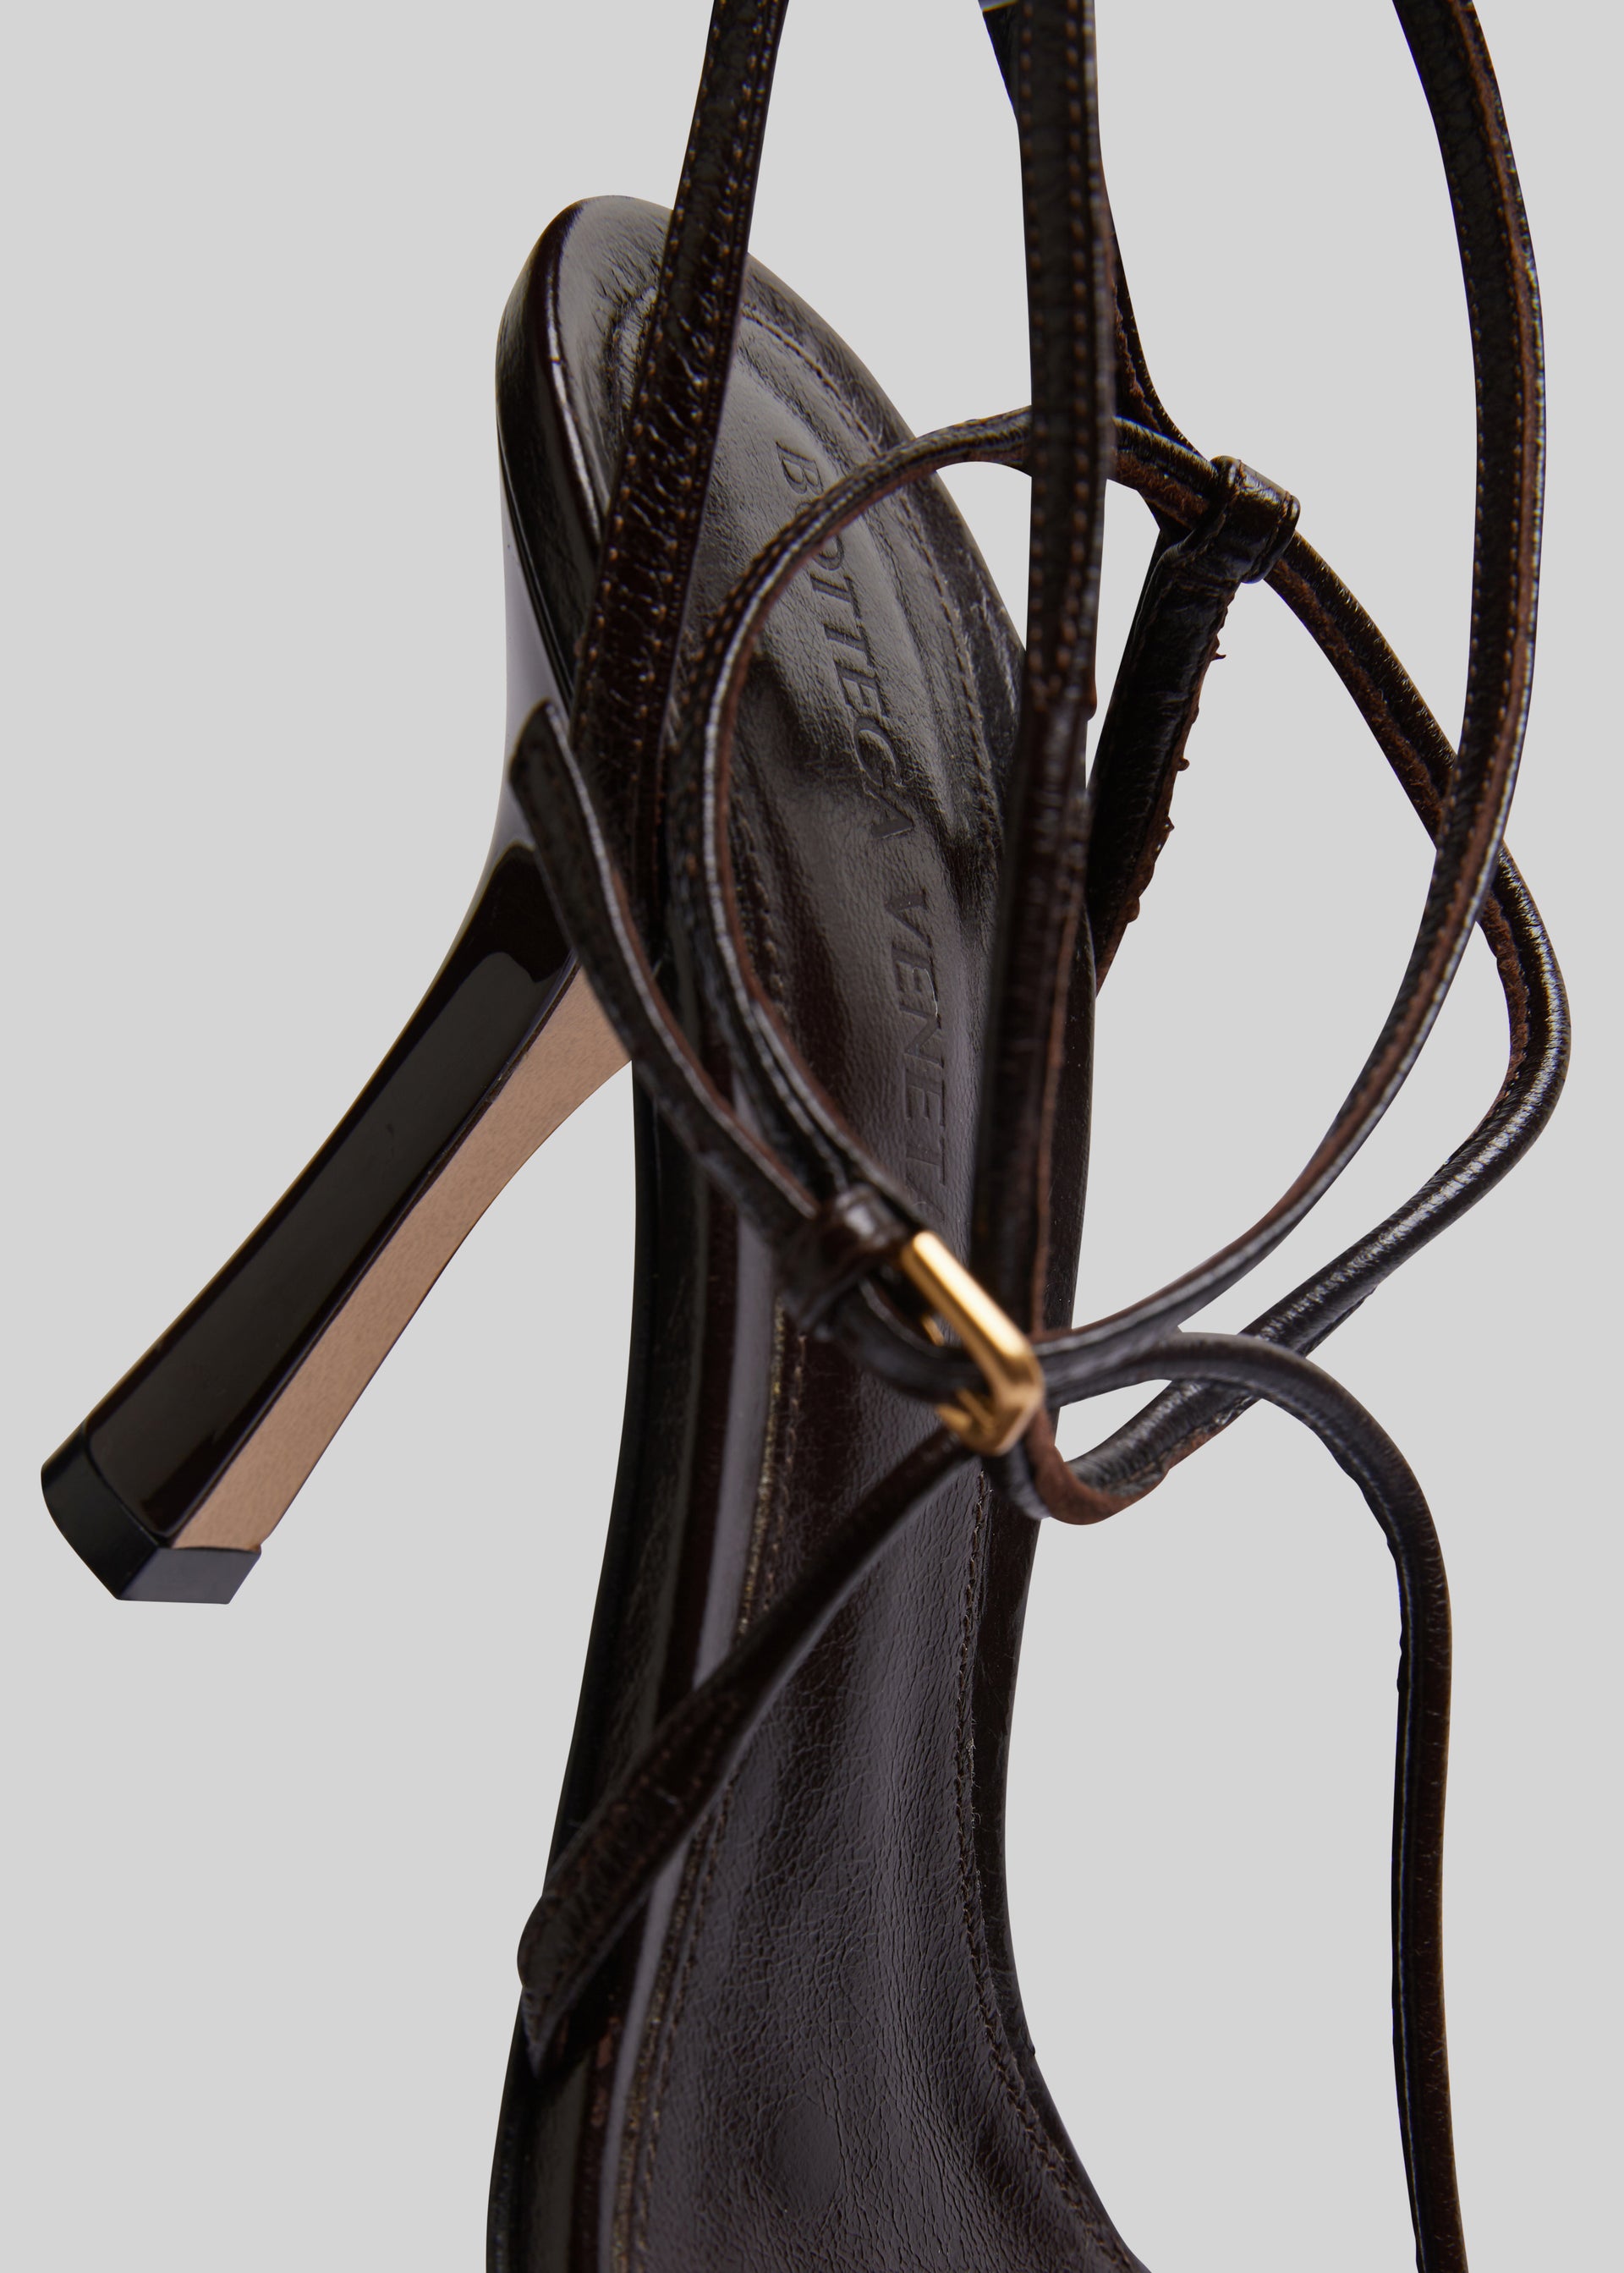 Bottega Veneta strappy sandals - IT37.5